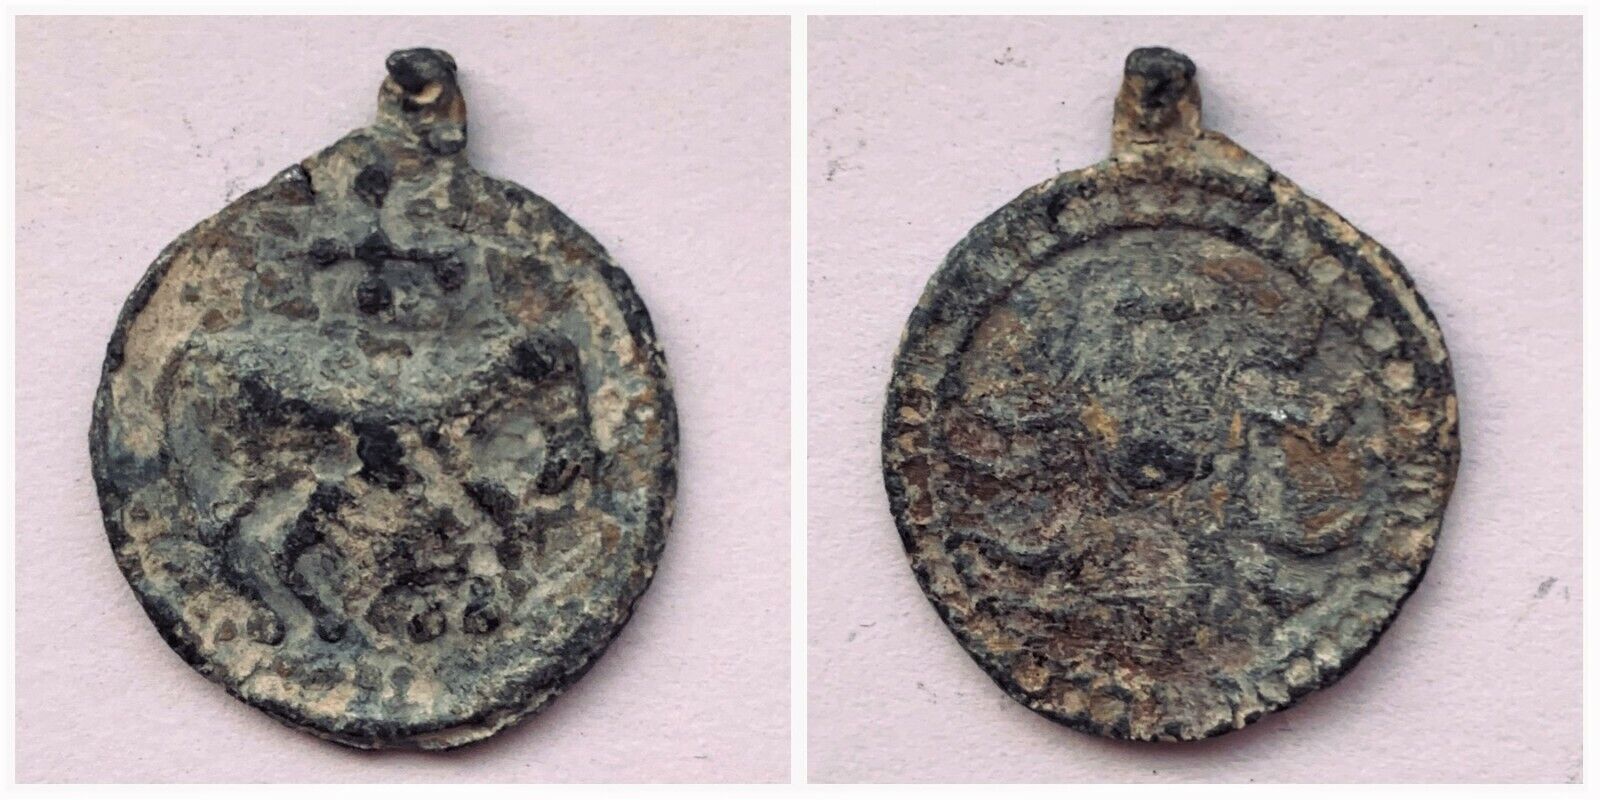 Zurqieh - Ancient Lead Pendant (Circa 12th-14th centuries AD) 5.4g Very Rare